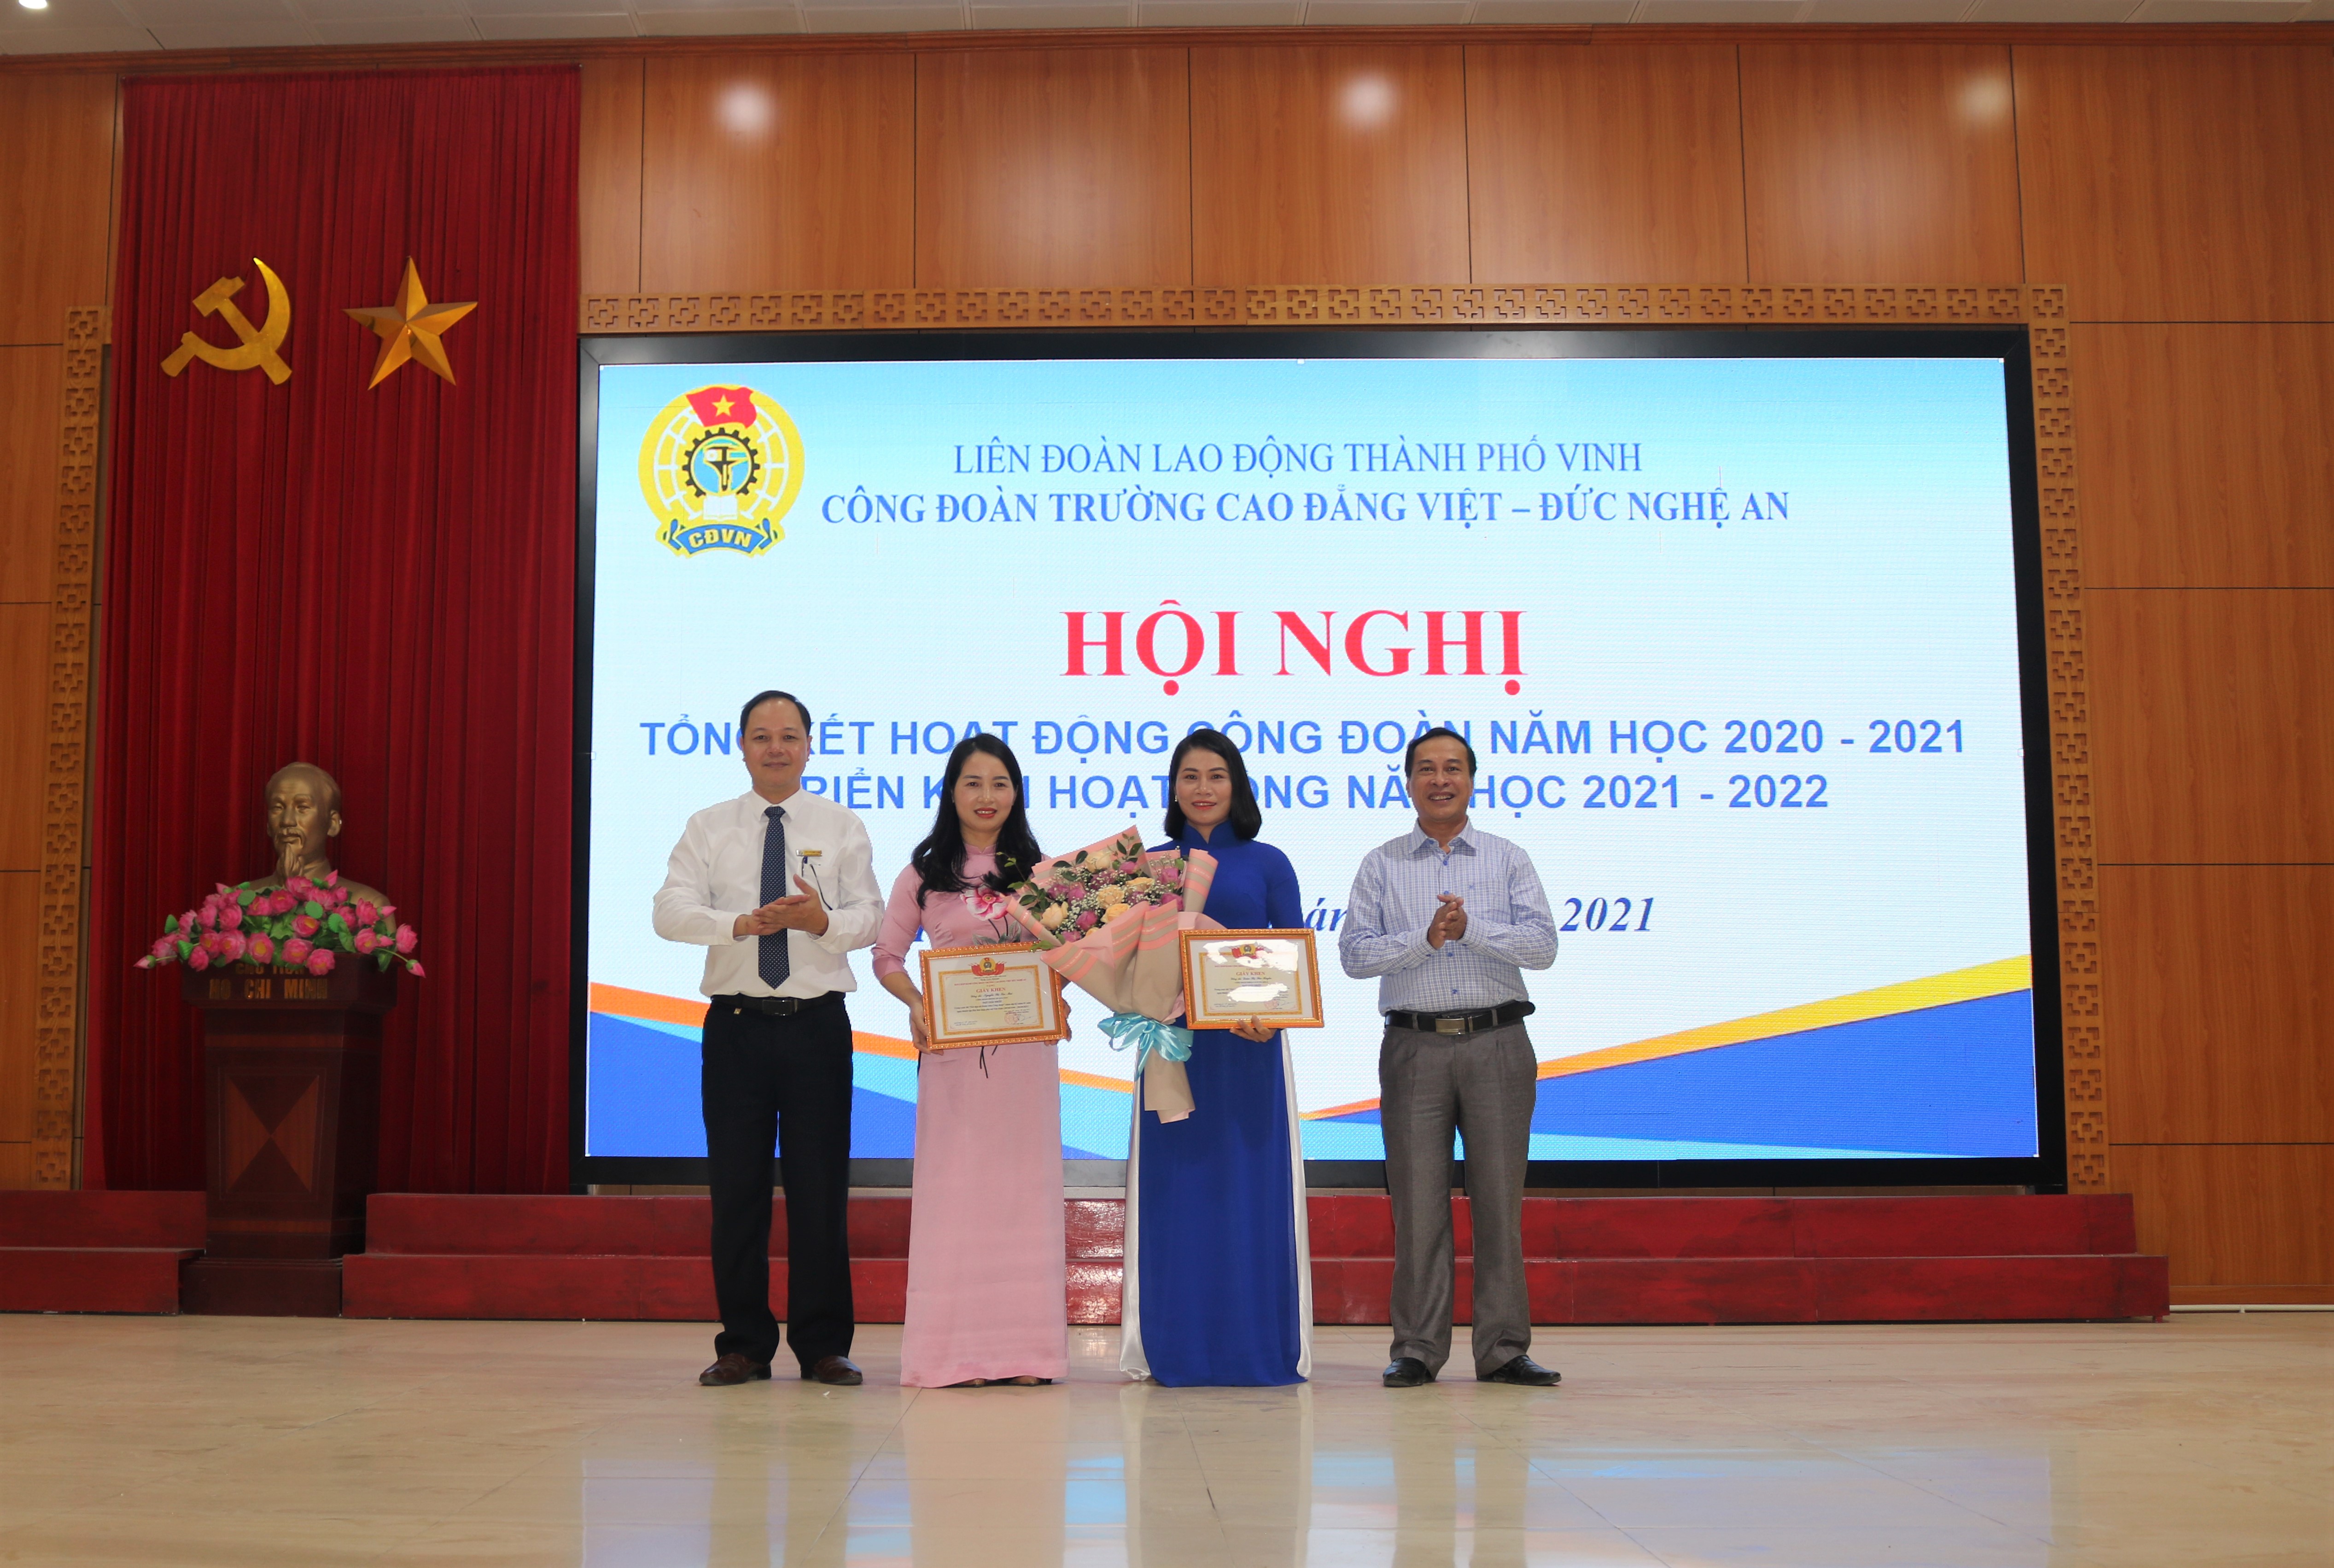 Công đoàn Trường Cao đẳng Việt – Đức Nghệ An tổ chức Hội nghị Tổng kết hoạt động Công đoàn năm học 2020 - 2021 và triển khai hoạt động năm học 2021 - 2022